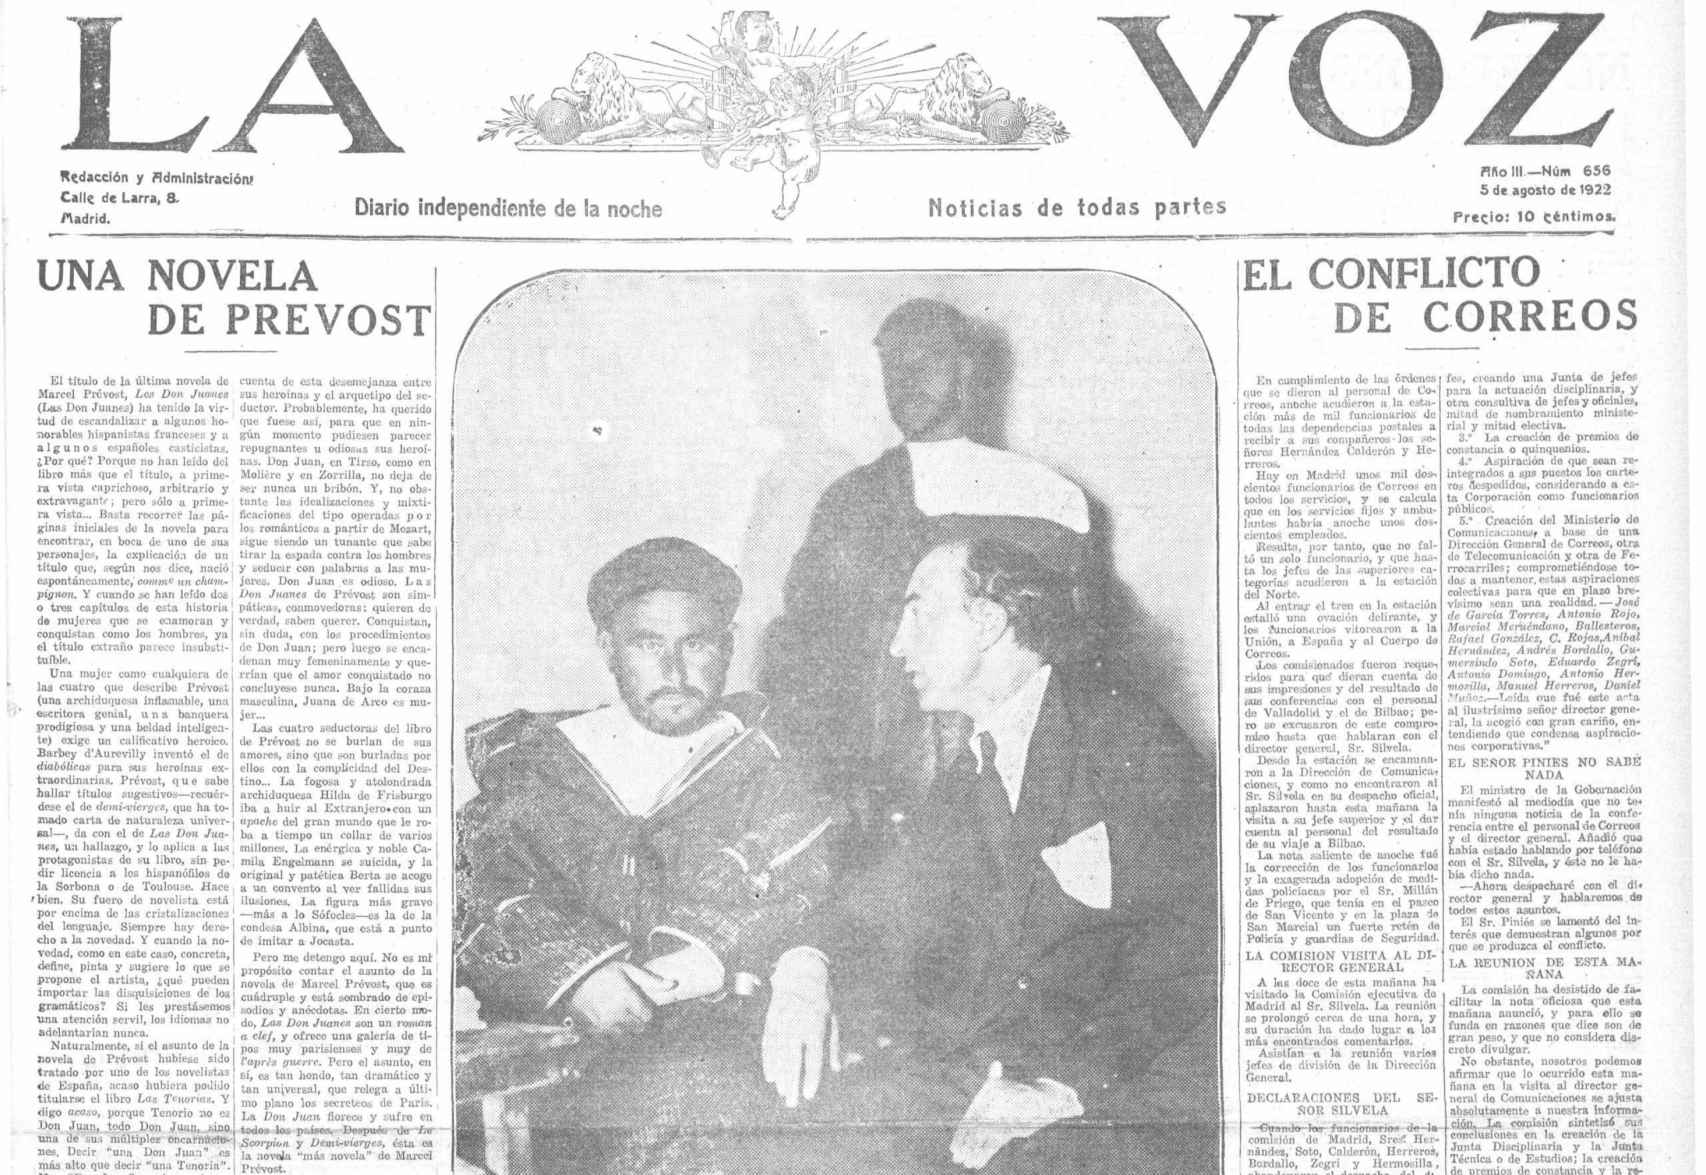 Portada del diario La Voz, 5 de agosto de 1922